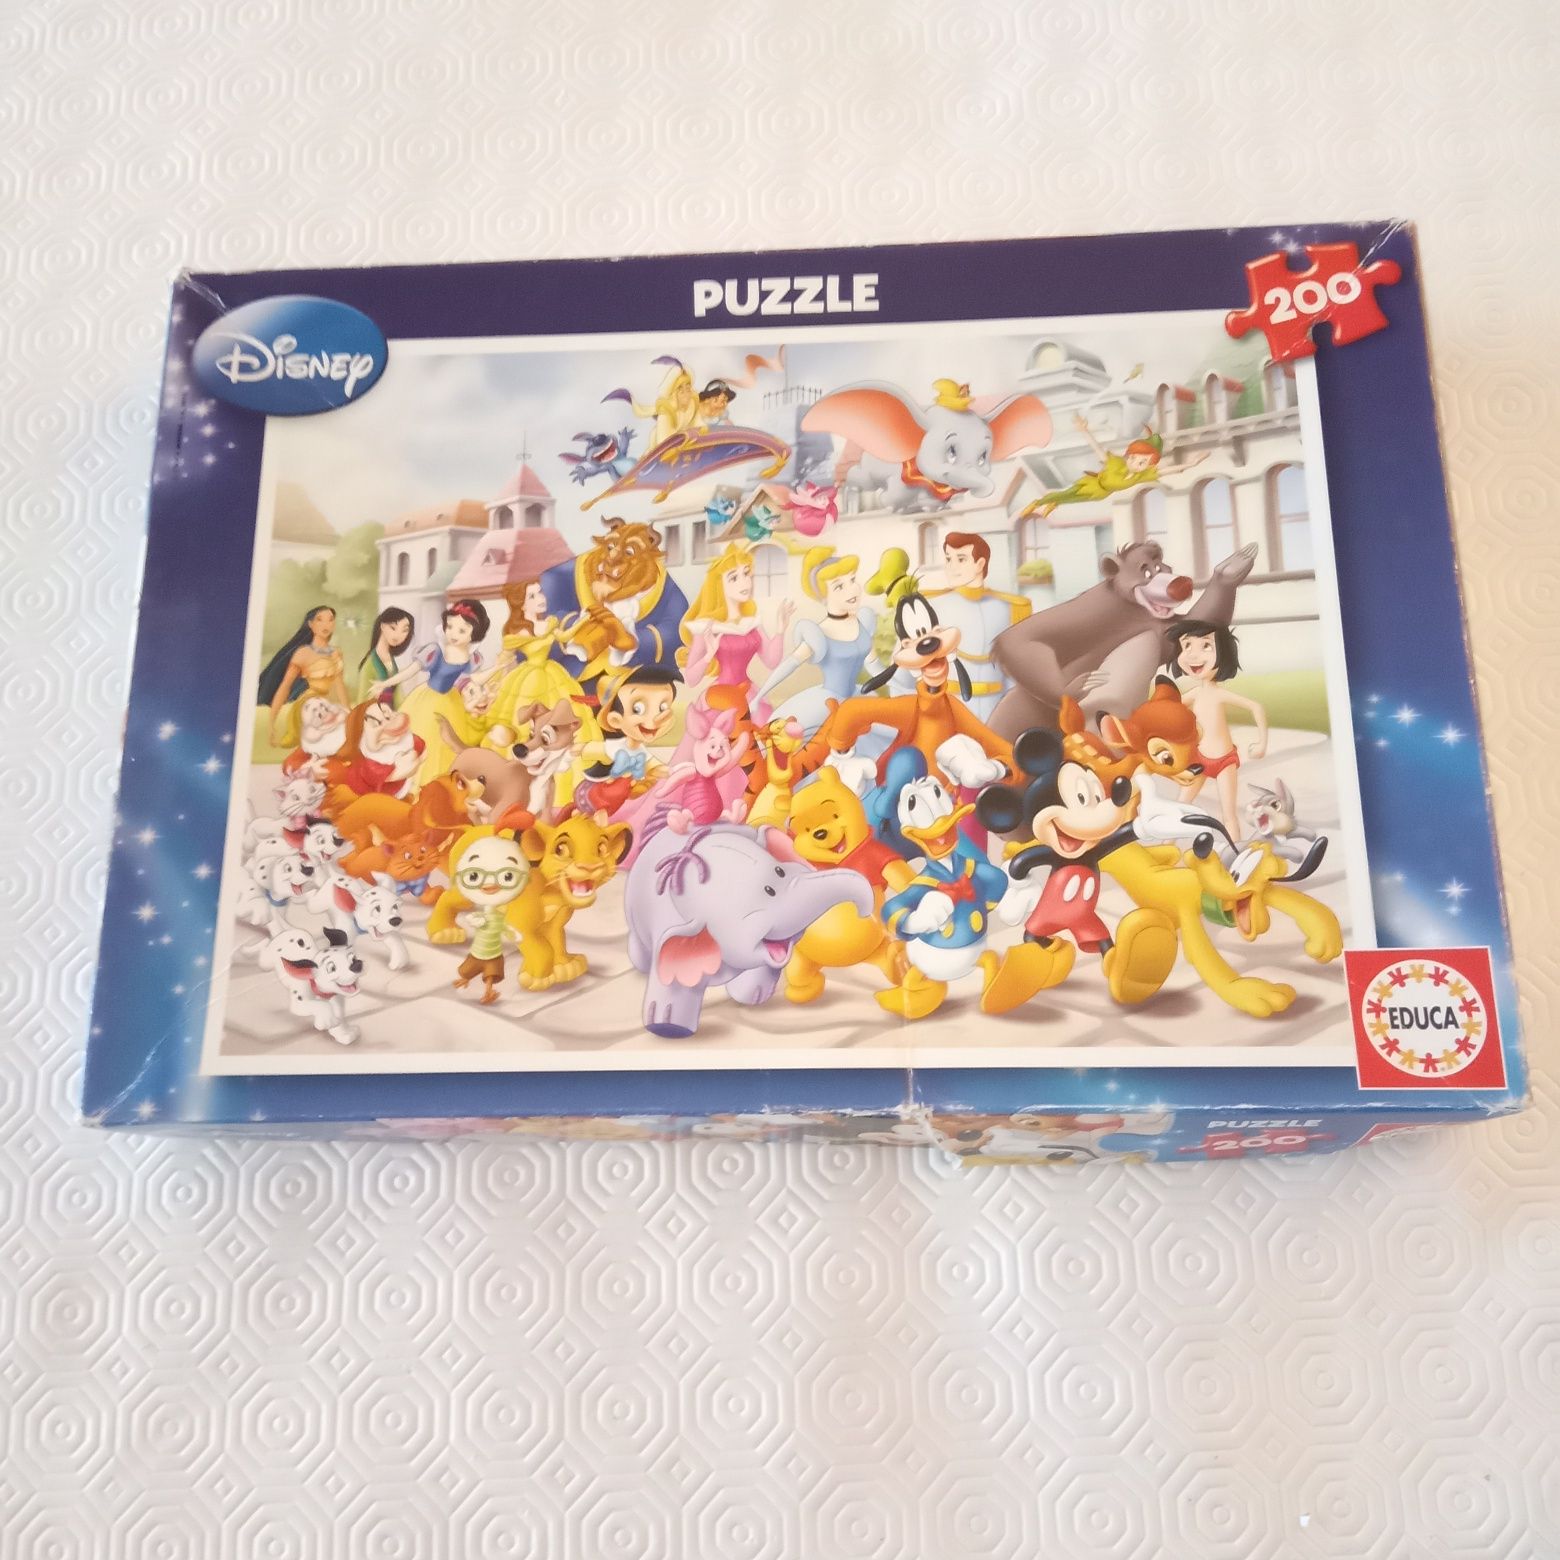 Puzzle da Disney de 200 peças